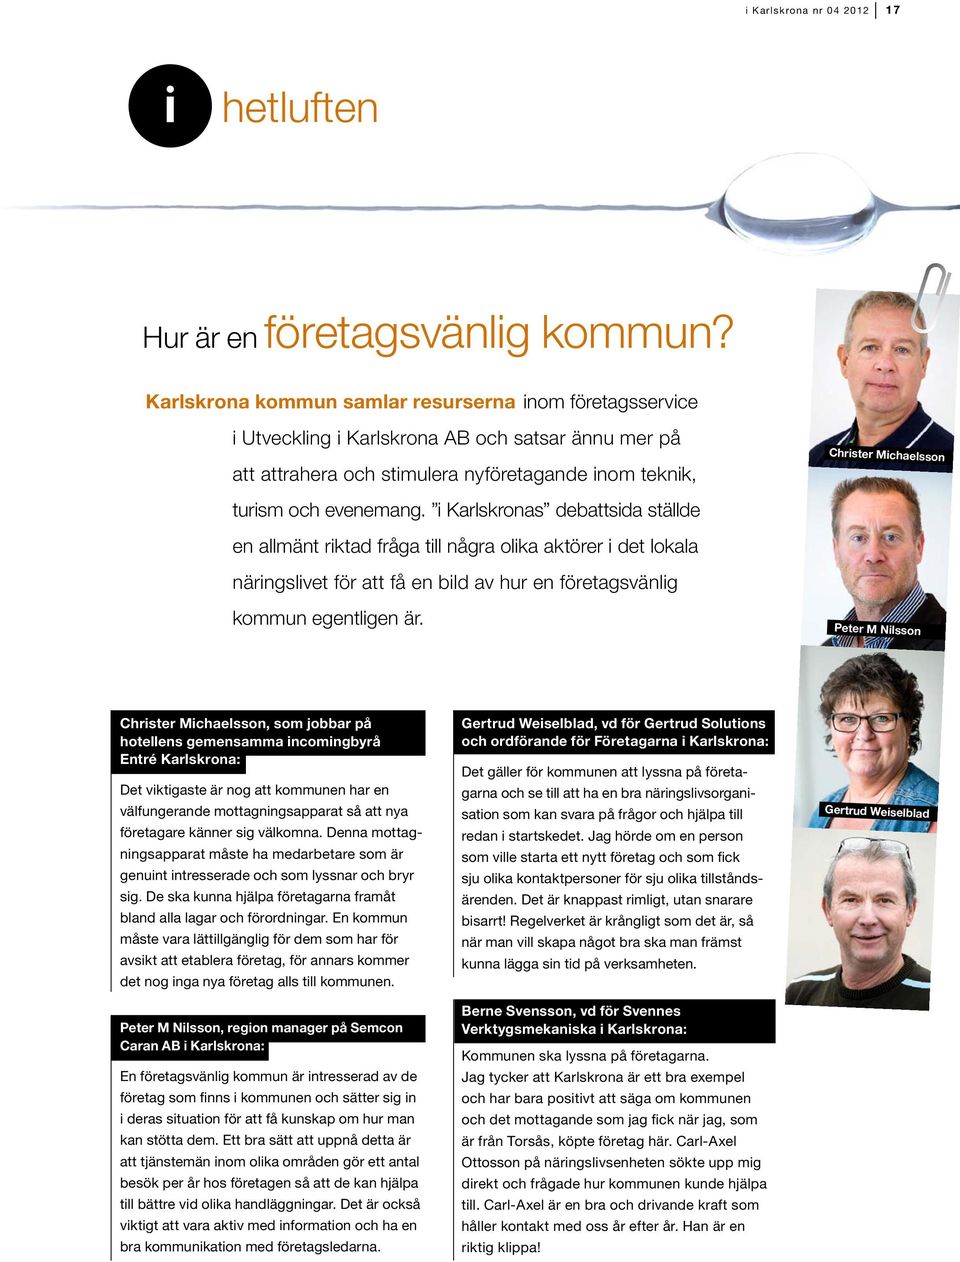 evenemang. i Karlskronas debattsida ställde en allmänt riktad fråga till några olika aktörer i det lokala näringslivet för att få en bild av hur en företagsvänlig kommun egentligen är.